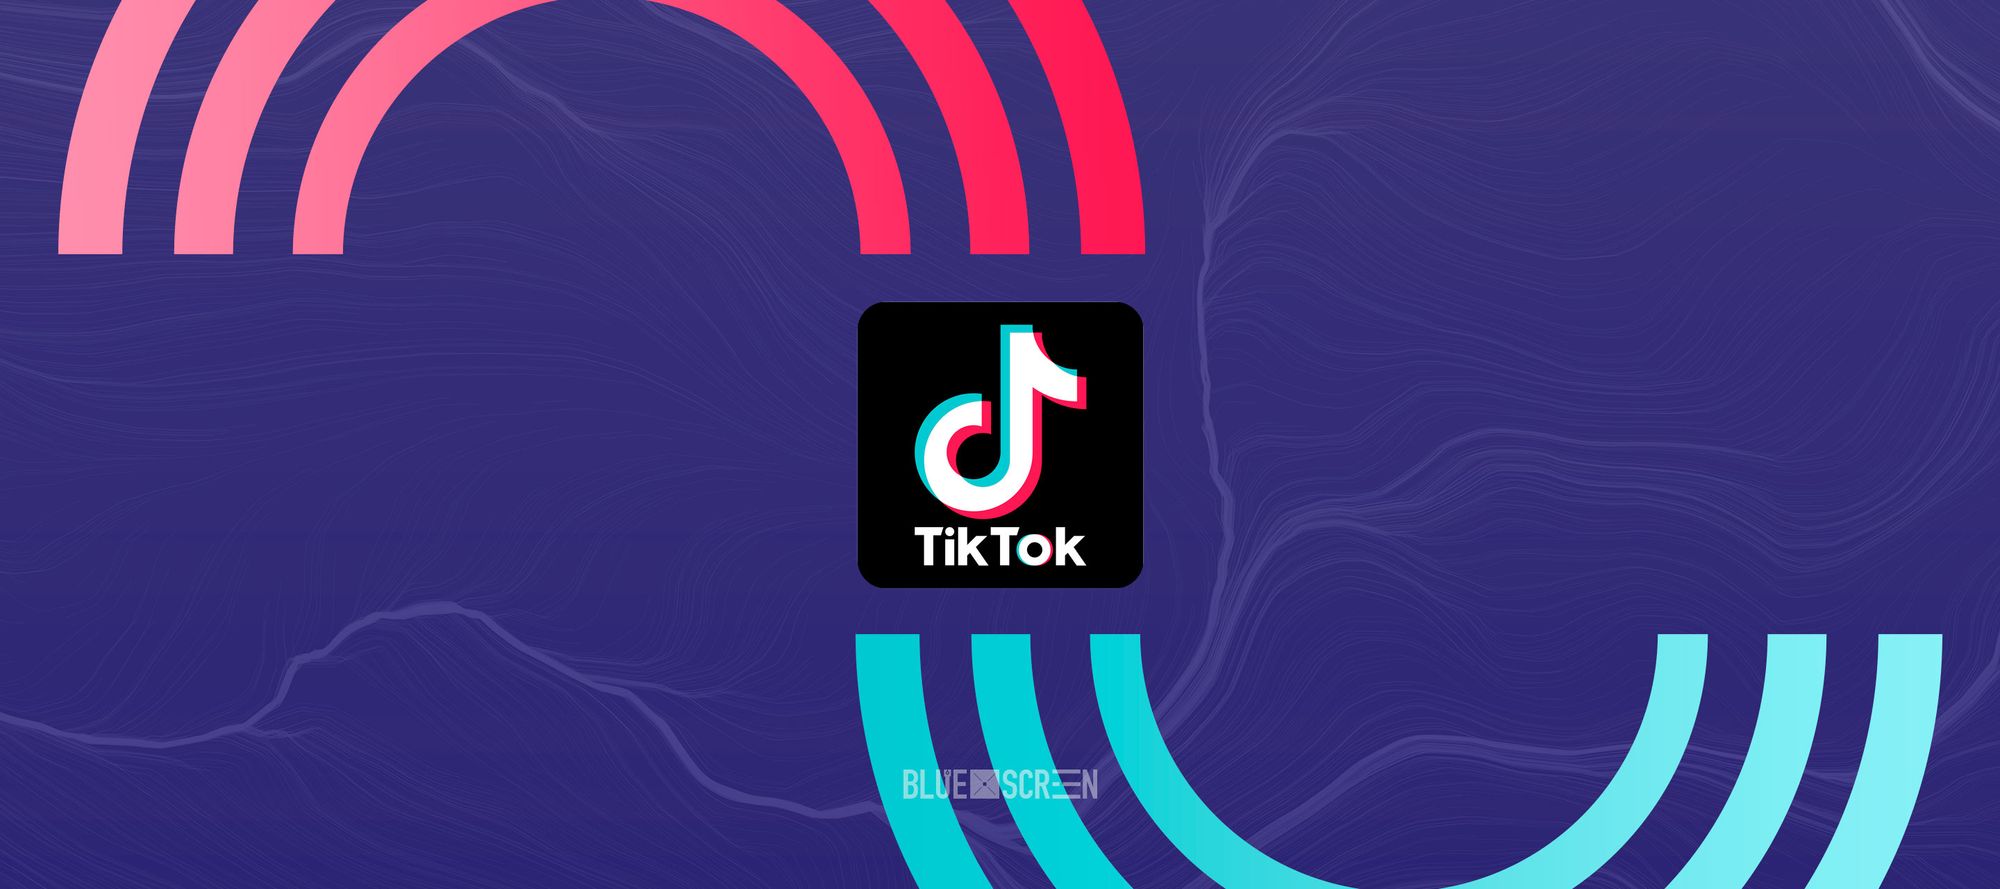 TikTok примет участие в Digital Bridge 2022